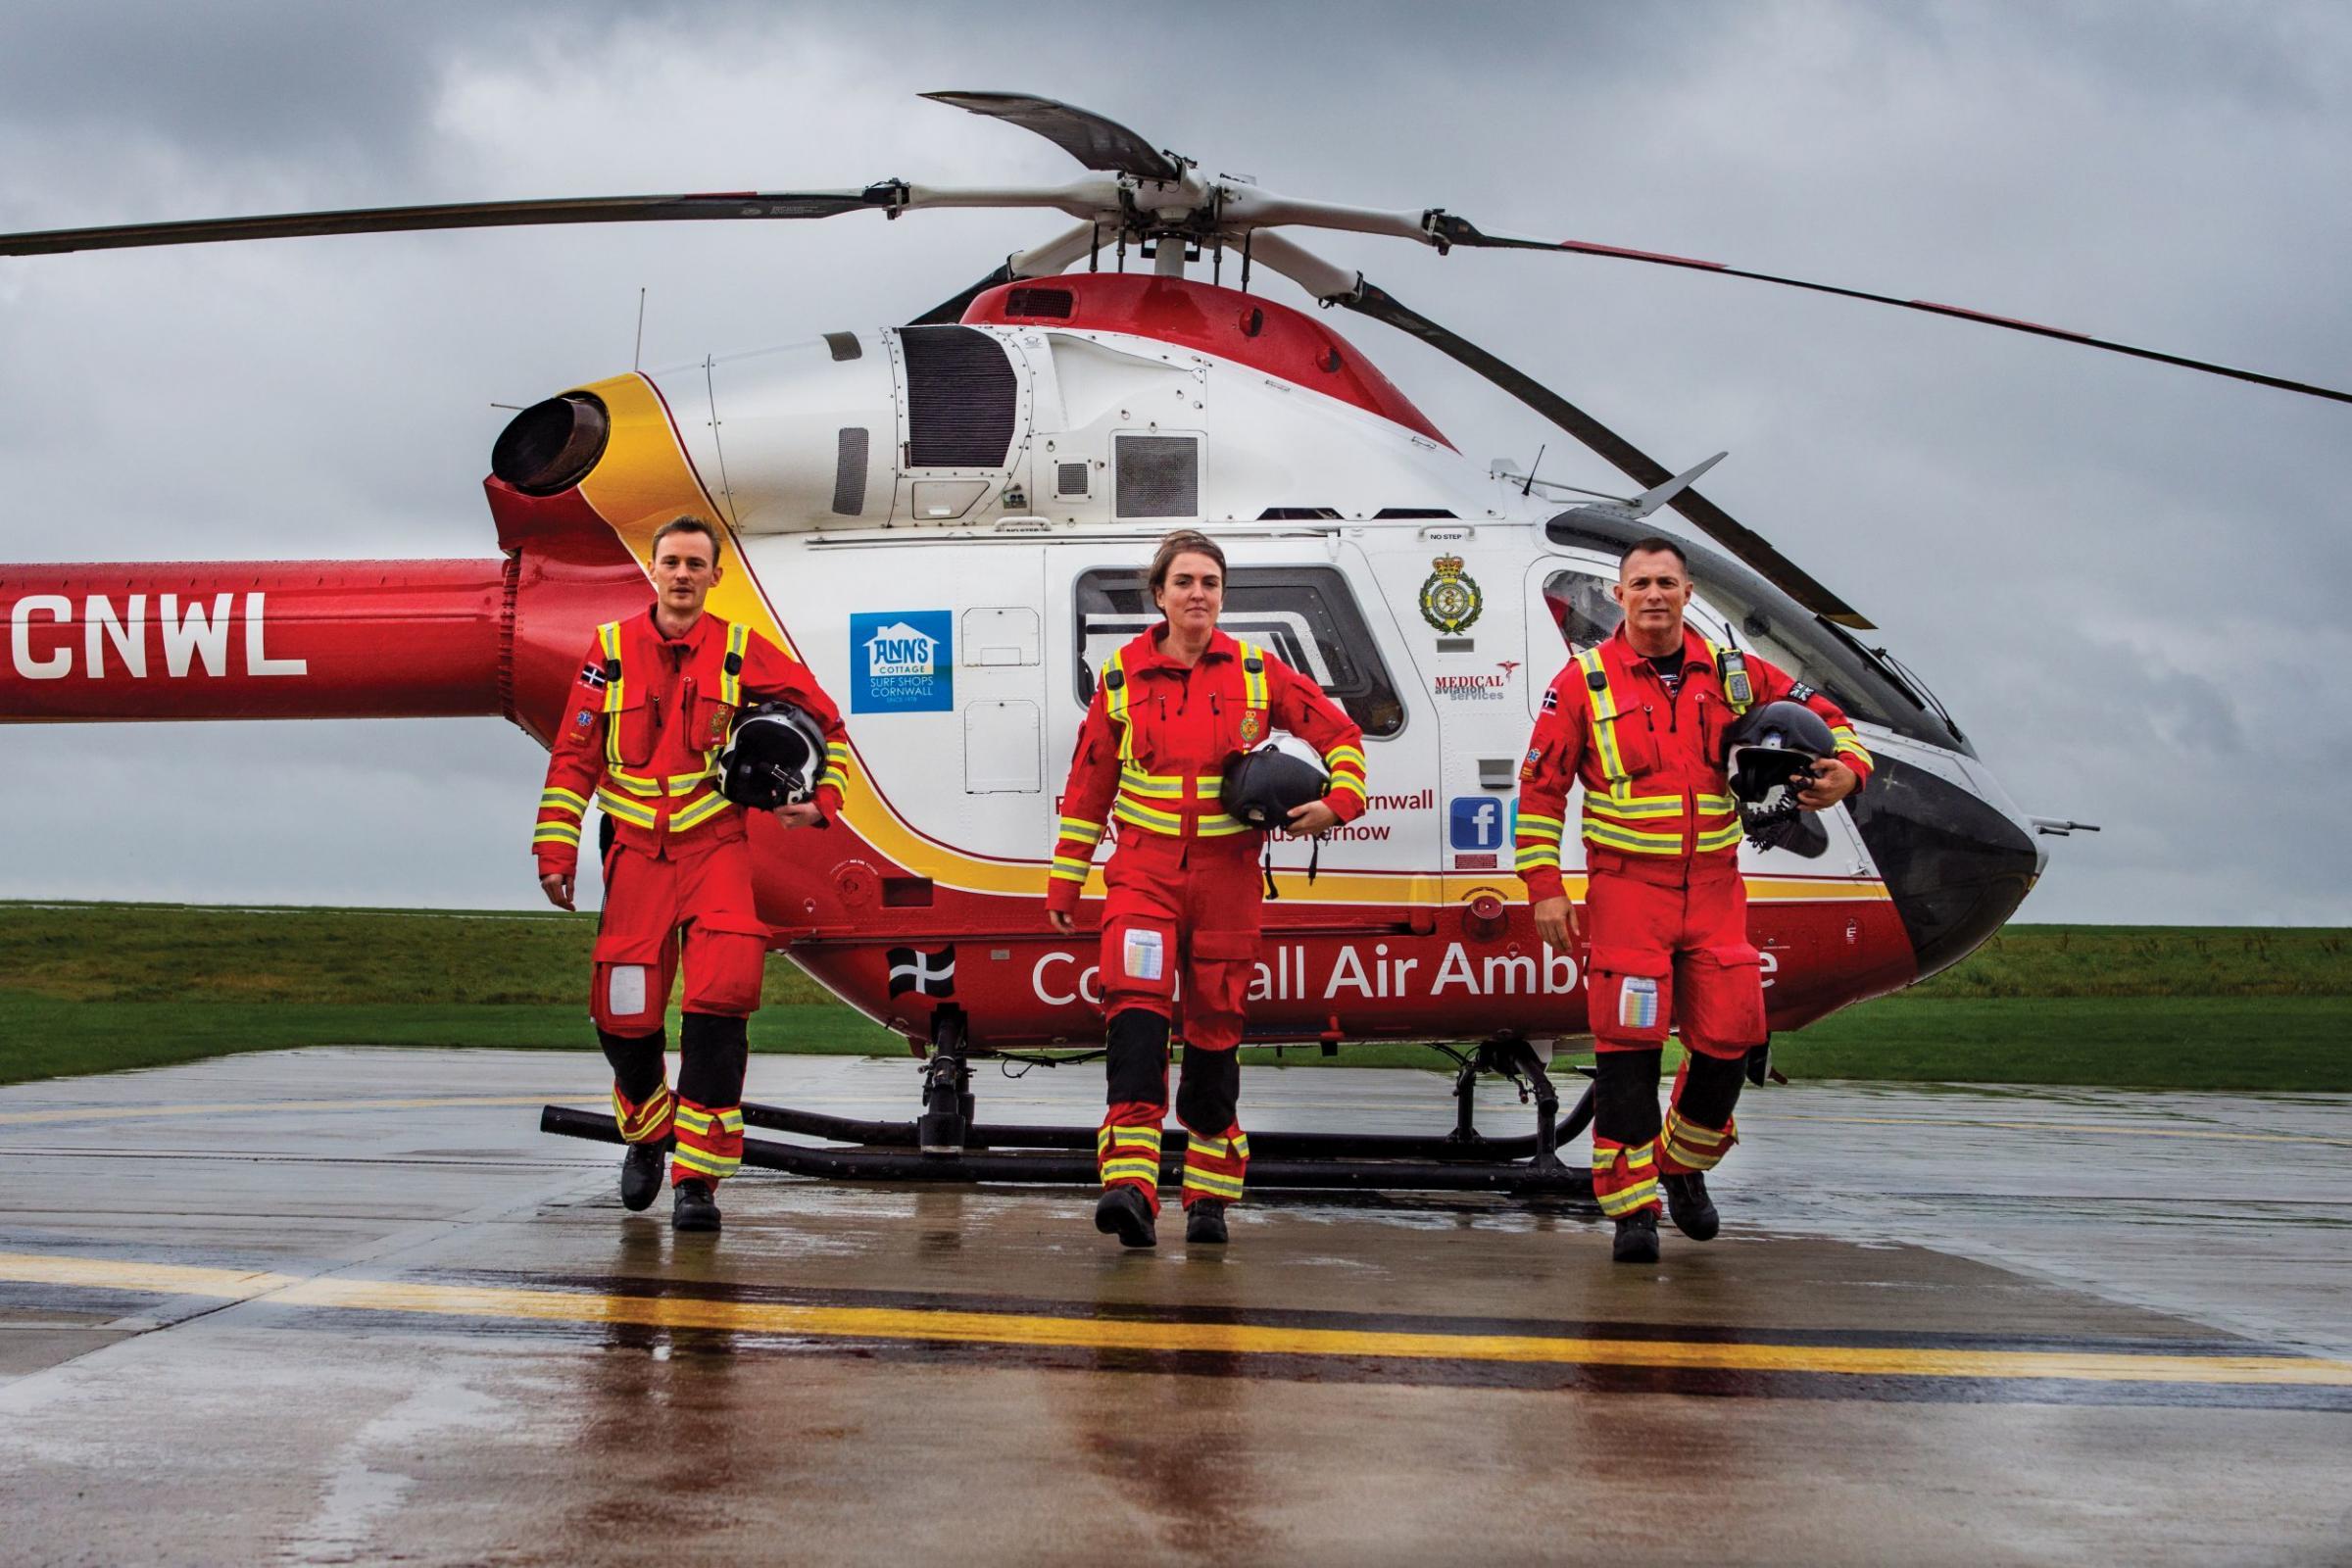 Cornwall Air Ambulance today